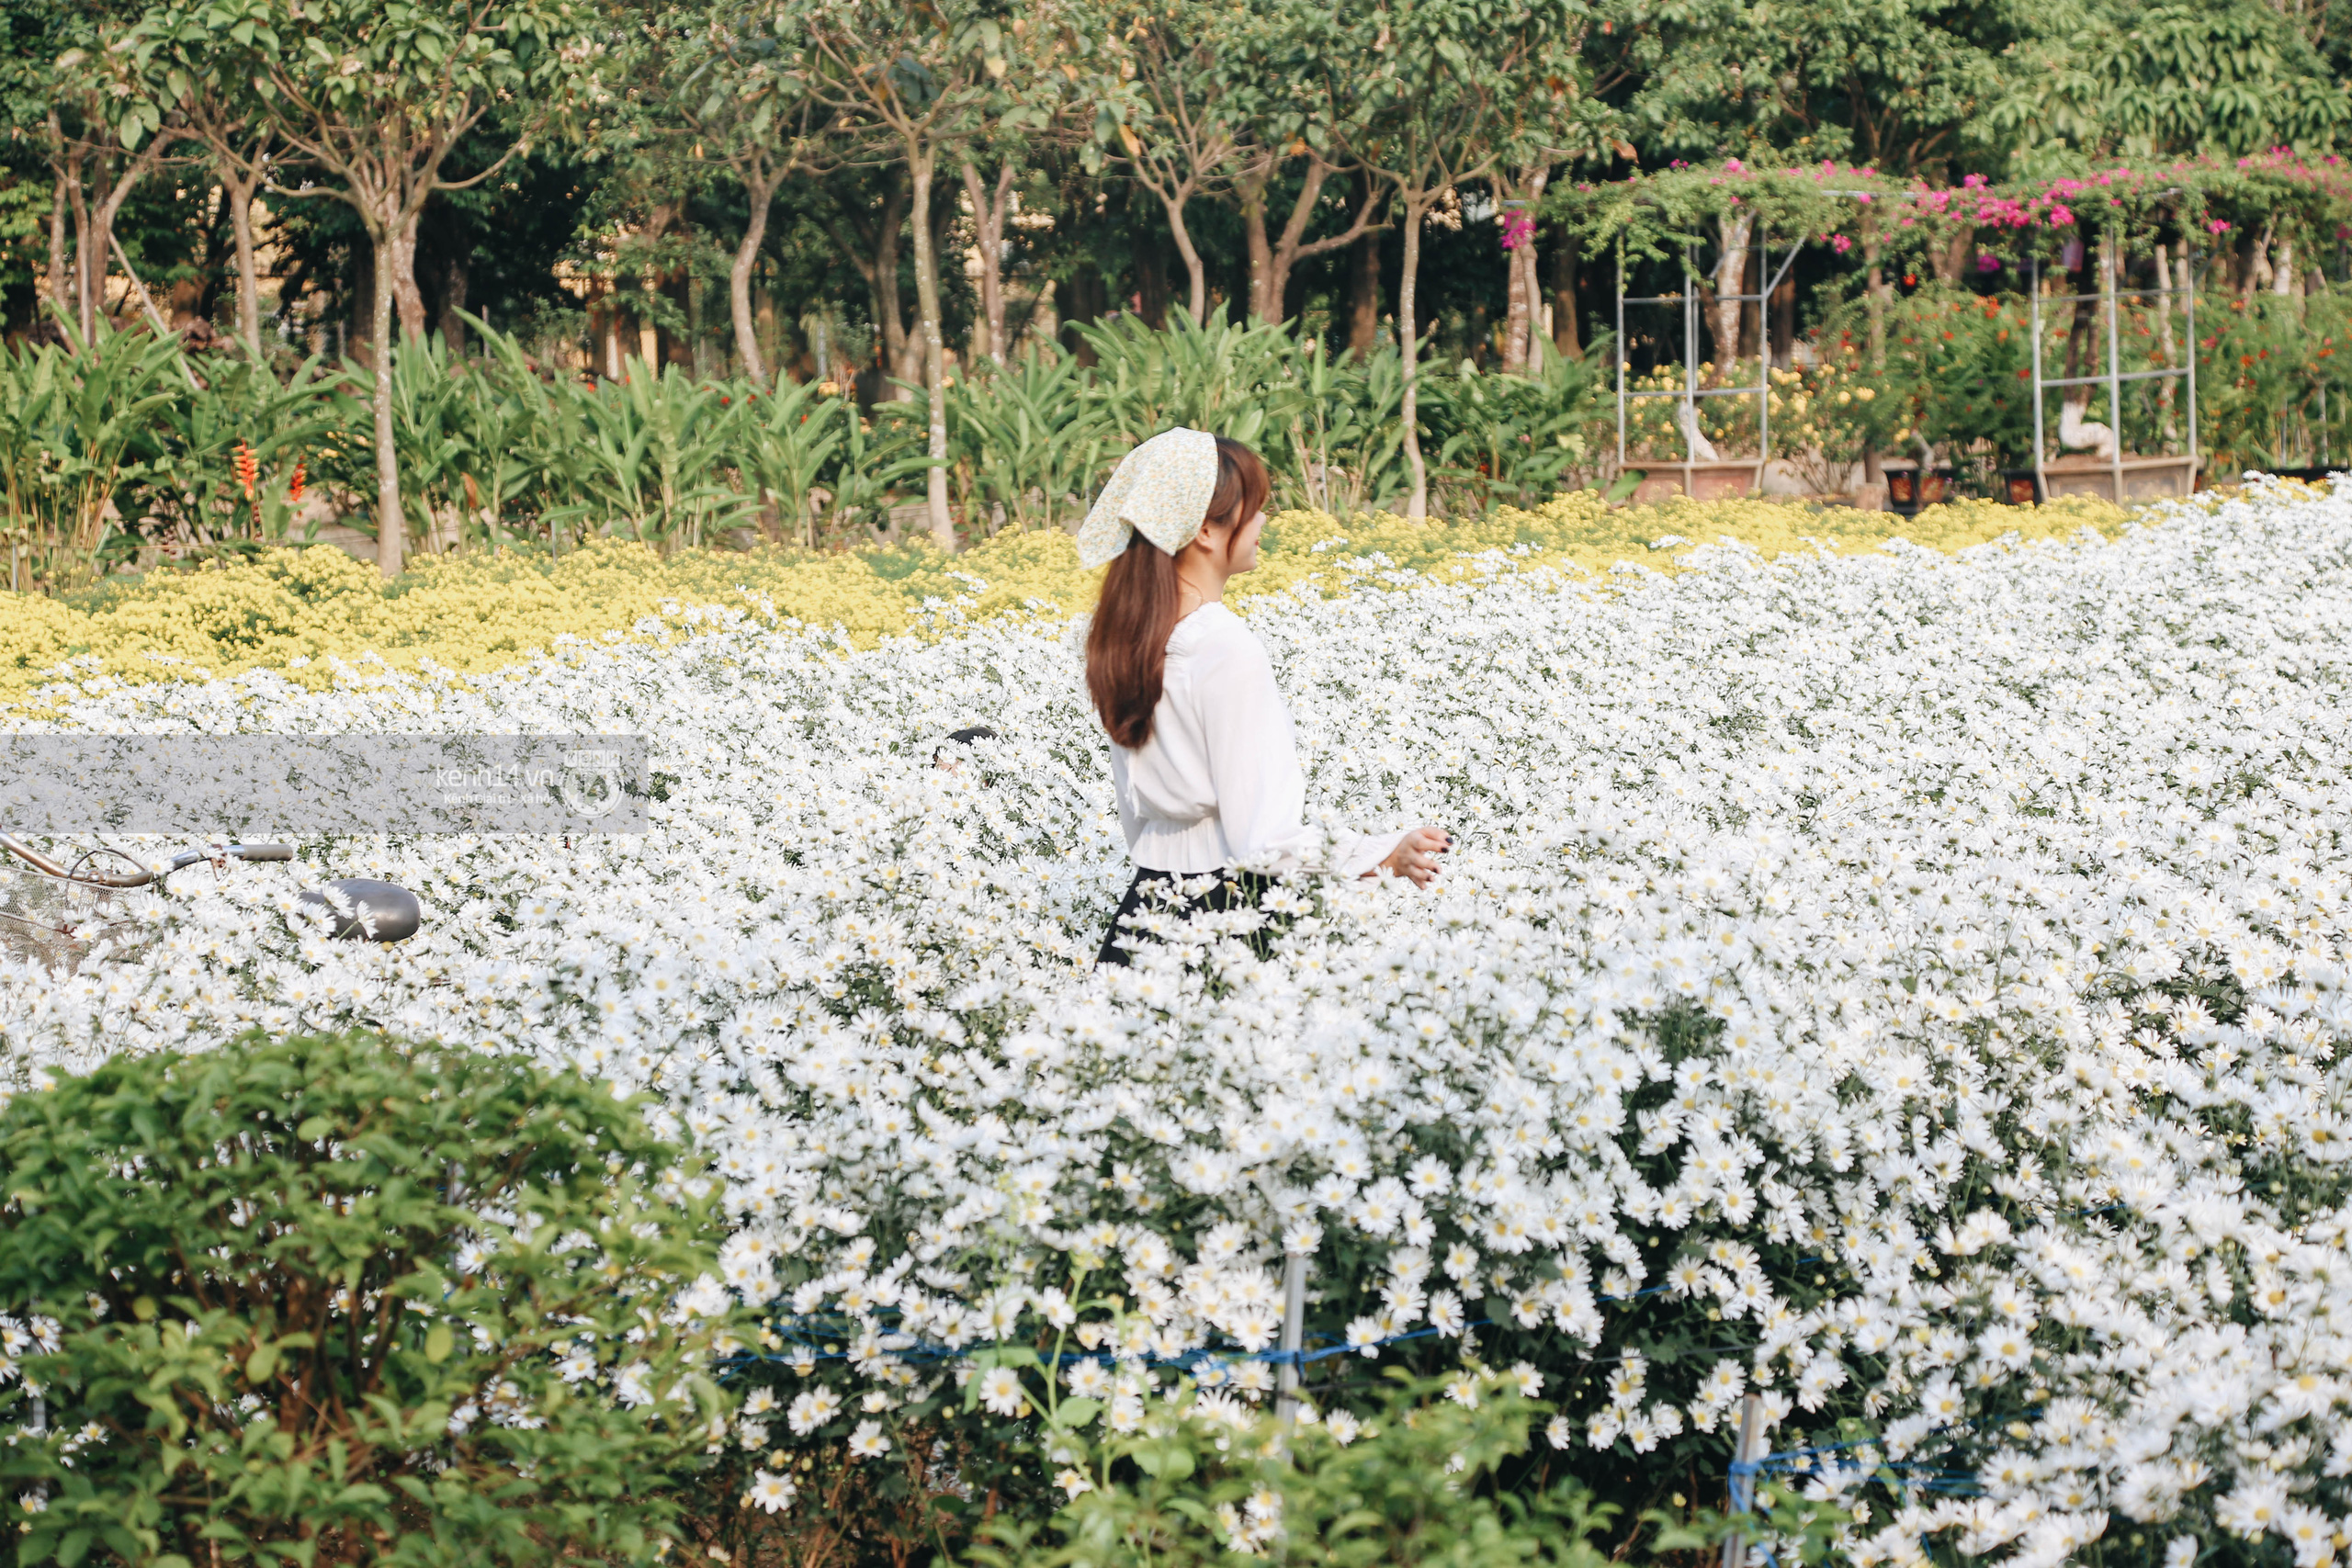 Trường ĐH rộng gần 200ha có vườn hoa đẹp nhất mùa đông Hà Nội, nhiều góc sống ảo cực chill chỉ với 25K - Ảnh 3.